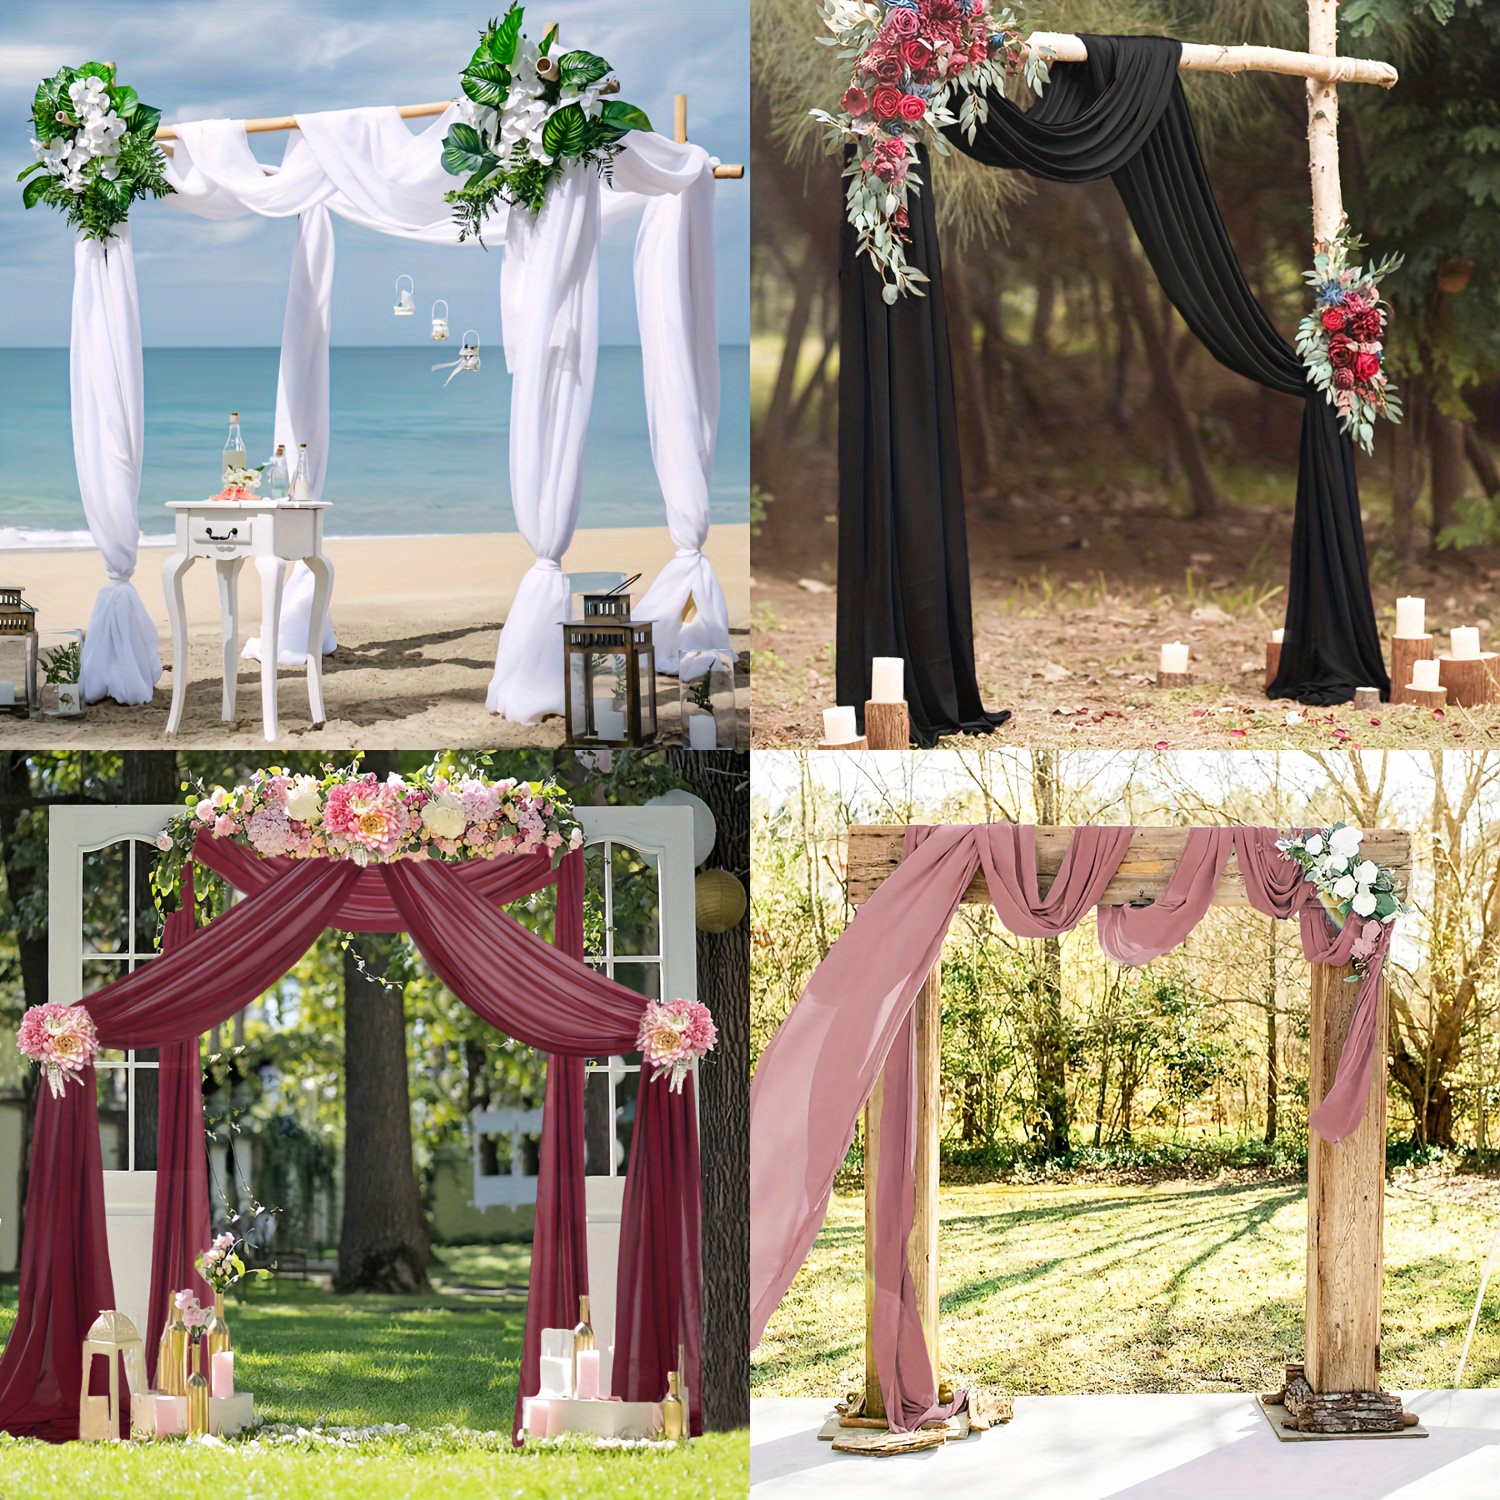 2pc Chiffon Wedding Arch Draping Fabric,75*600CM Wedding Arch